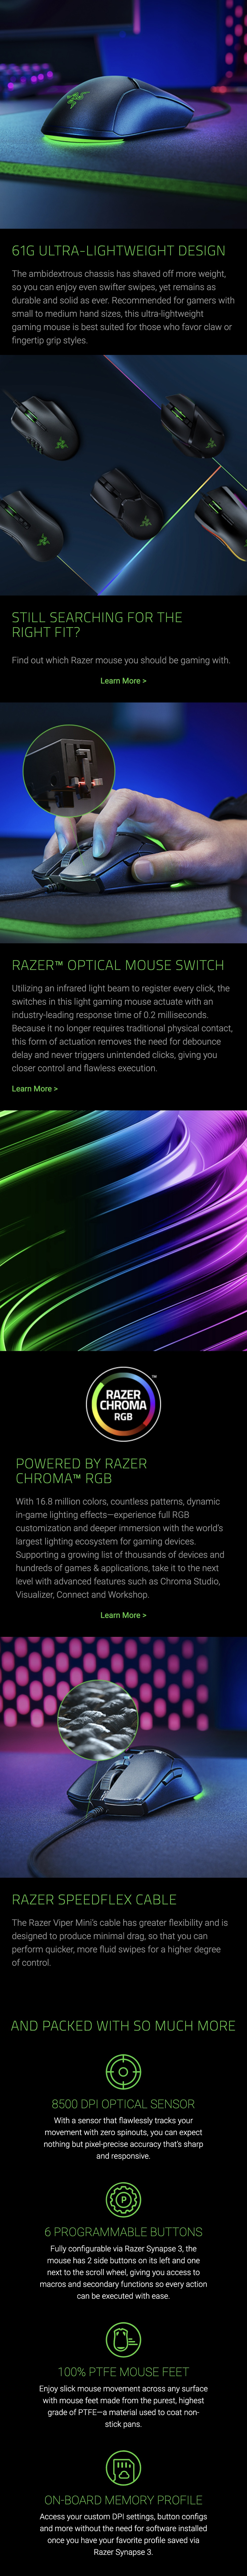 Razer-Viper-Mini-Ultra-Light-Wired-Gaming-Mouse-Description-2